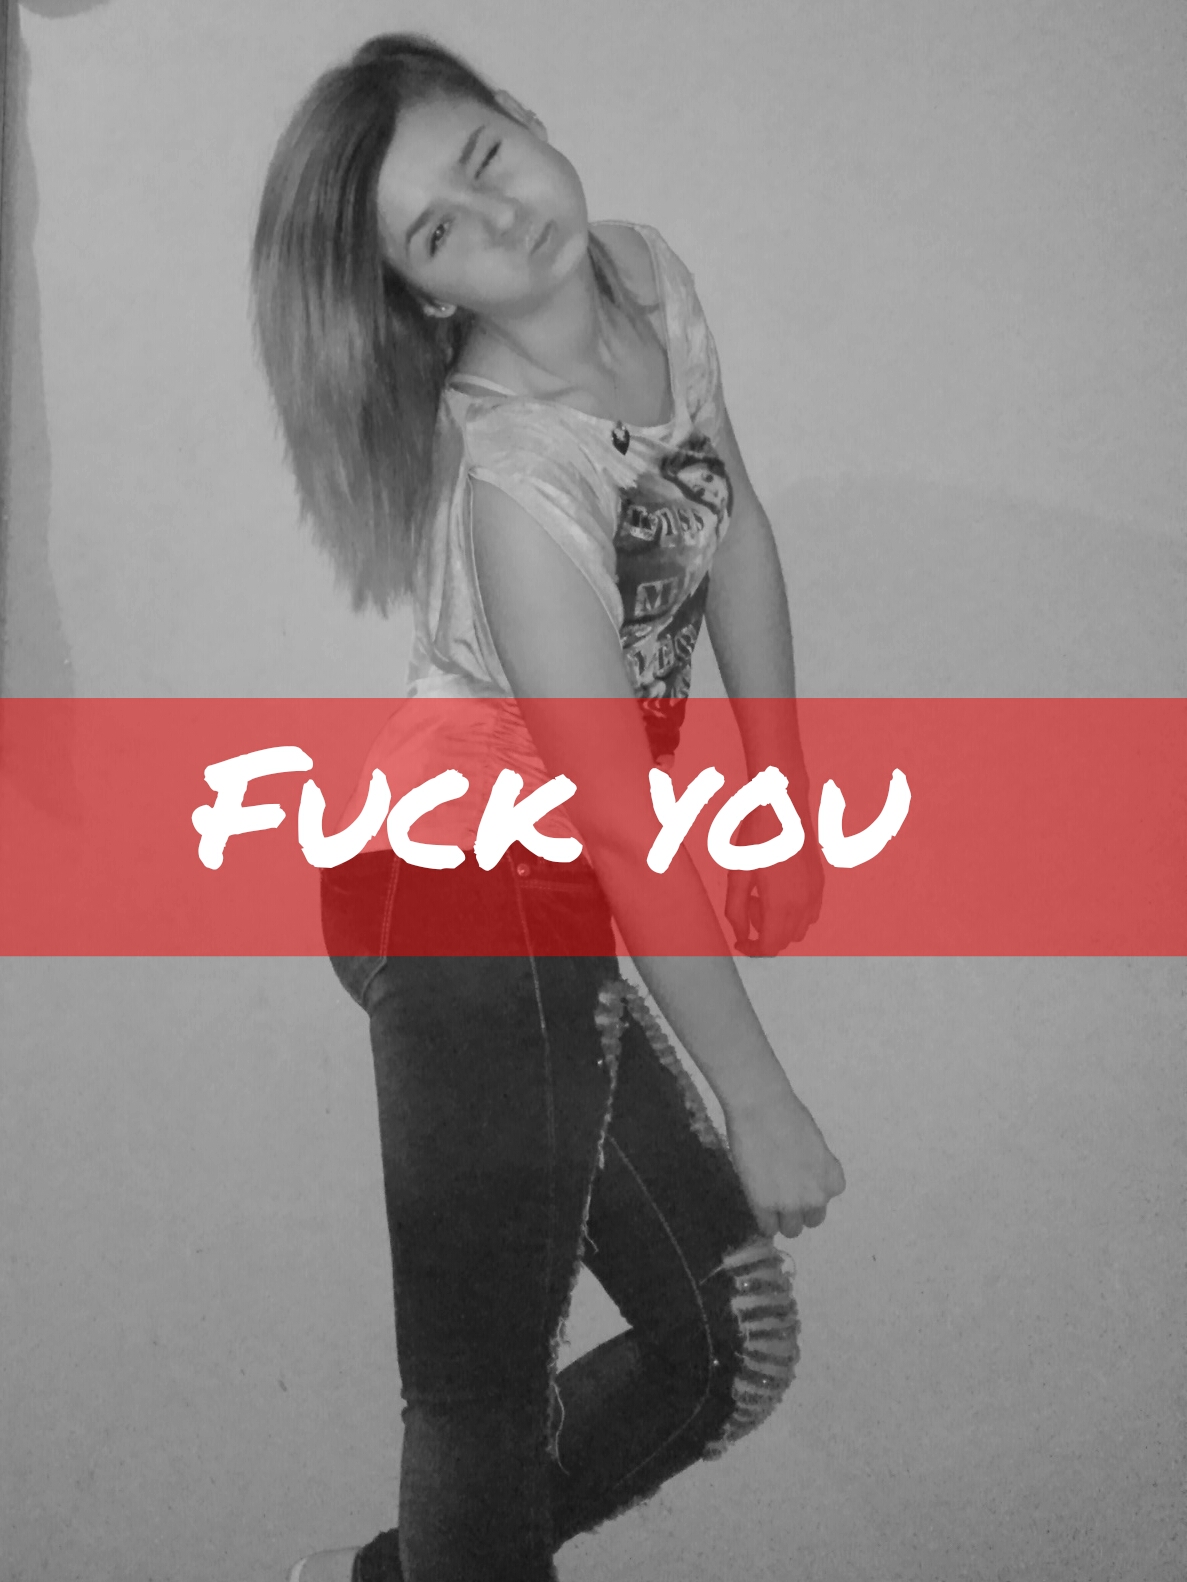 fuckyou girl bitch #fuckyou #girl image by @jennyhvok0366912